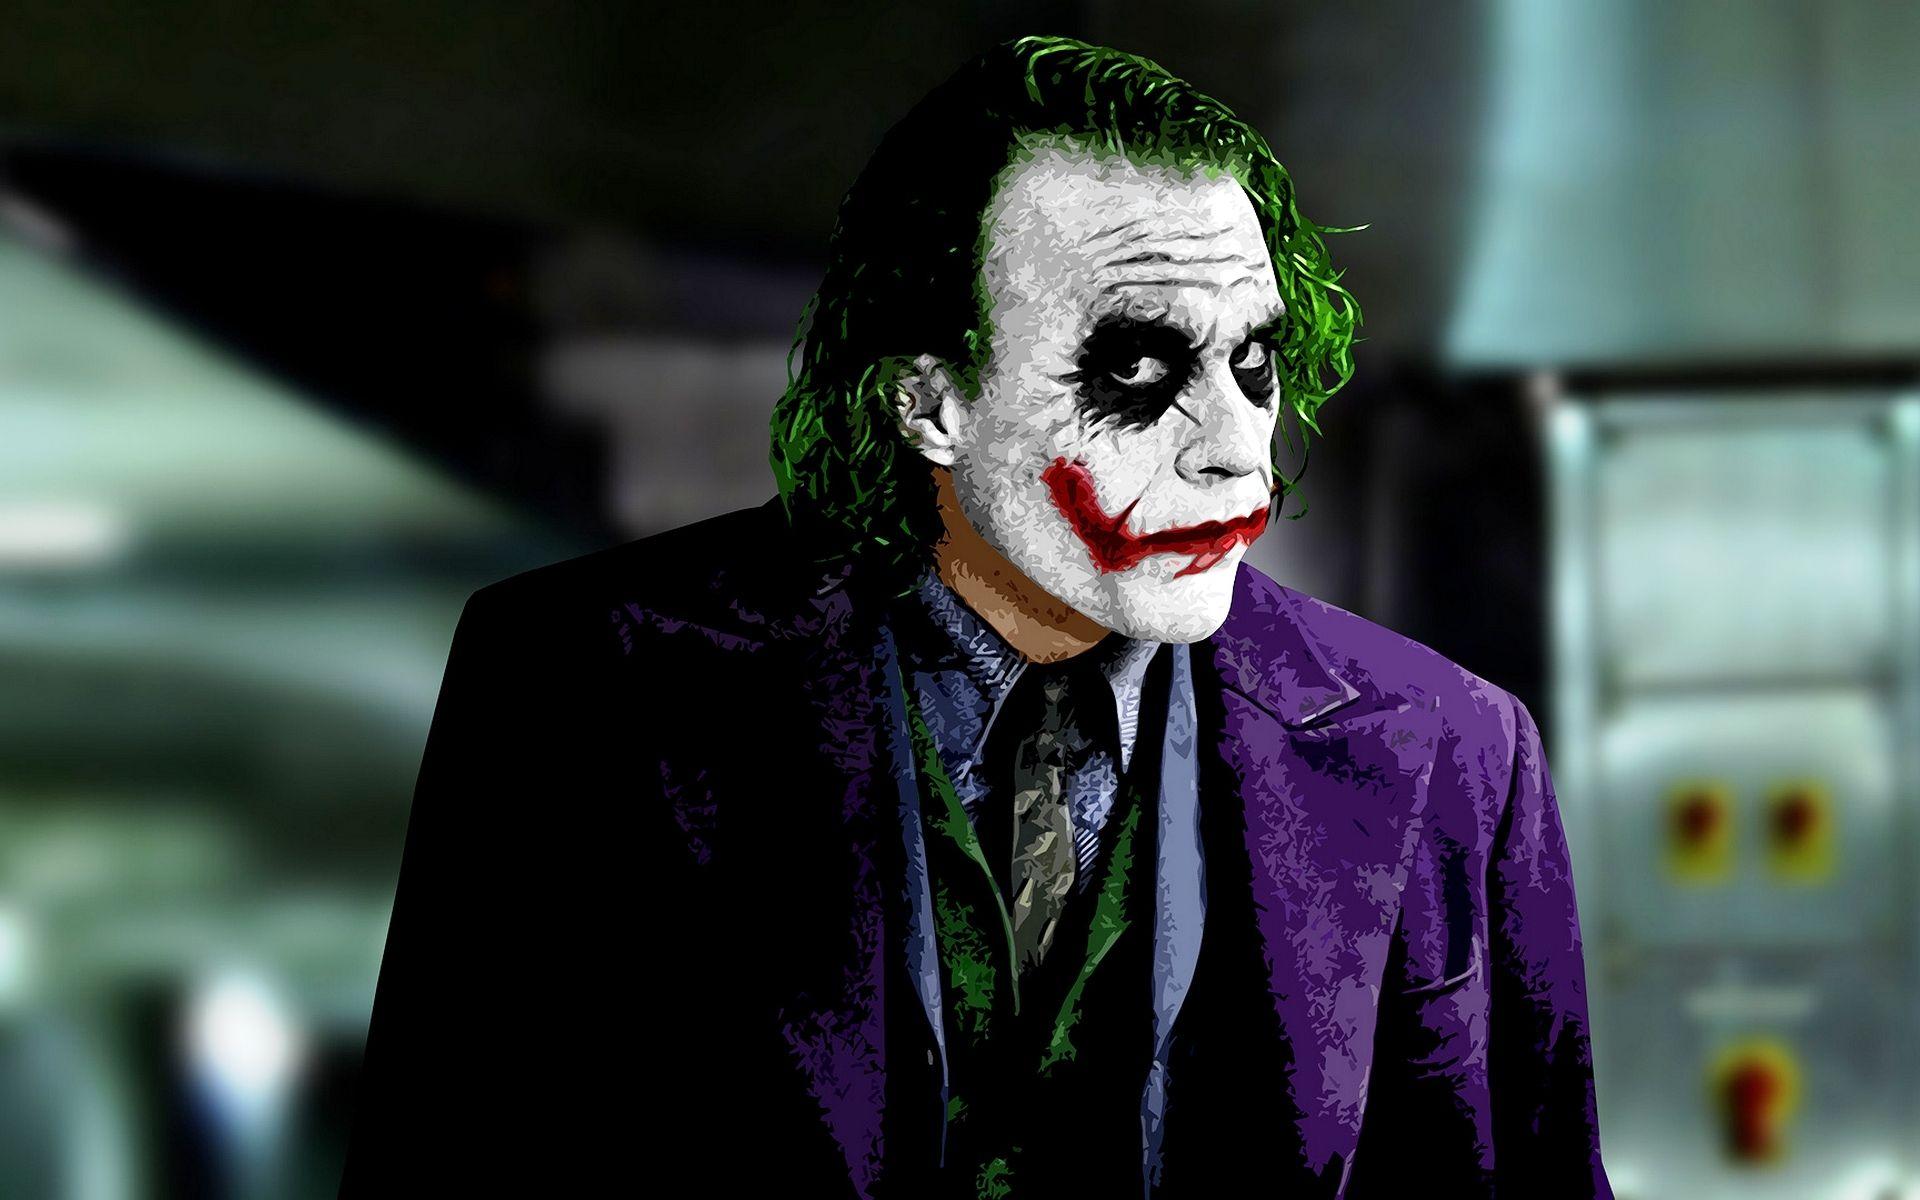 40 Gambar Batman Joker Wallpaper Hd 1080p terbaru 2020